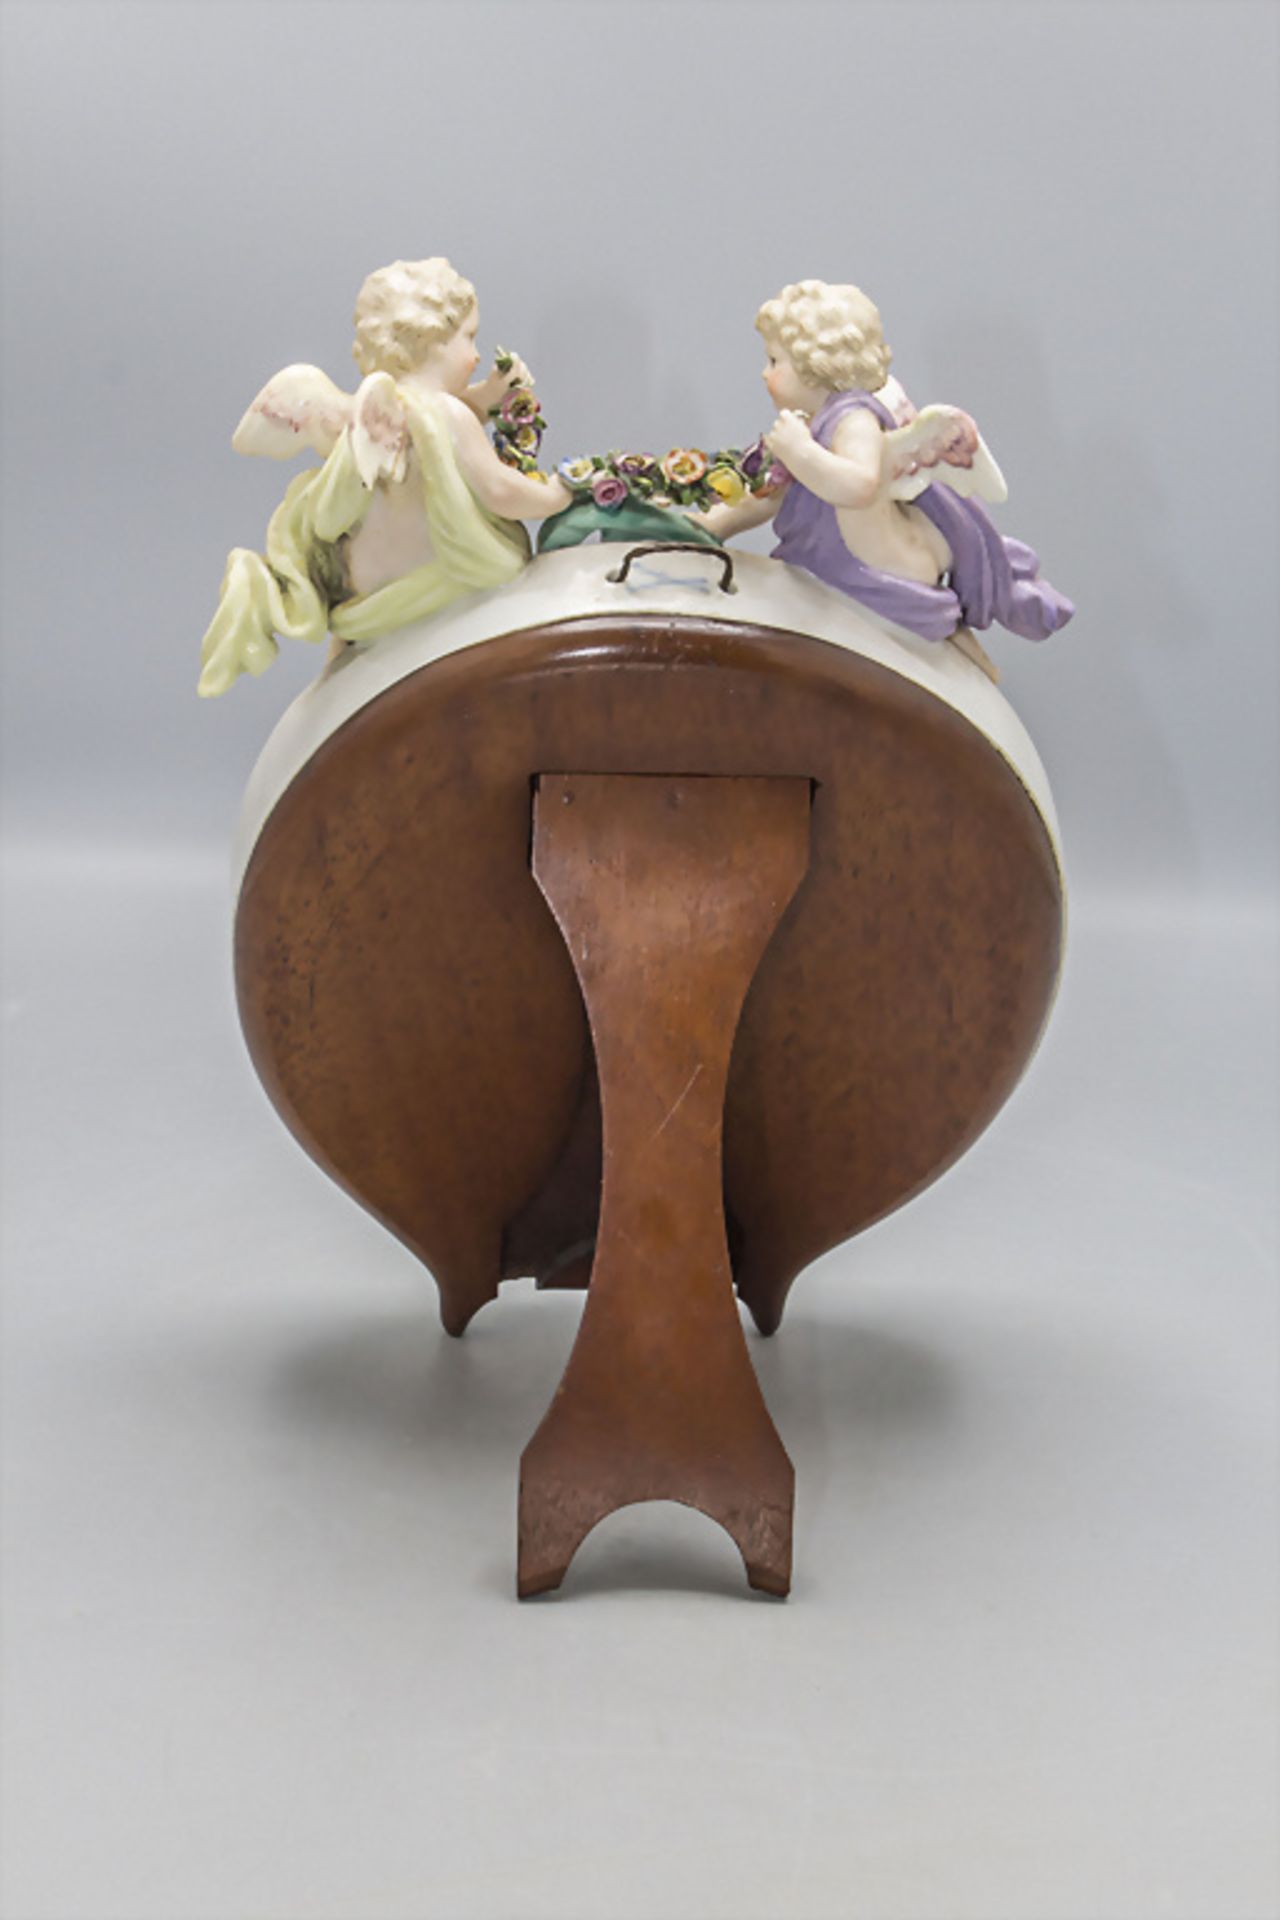 Ovaler Tischspiegel mit 2 Putten / An oval mirror with 2 cherubs, Meissen, Mitte 19. Jh. - Image 4 of 5